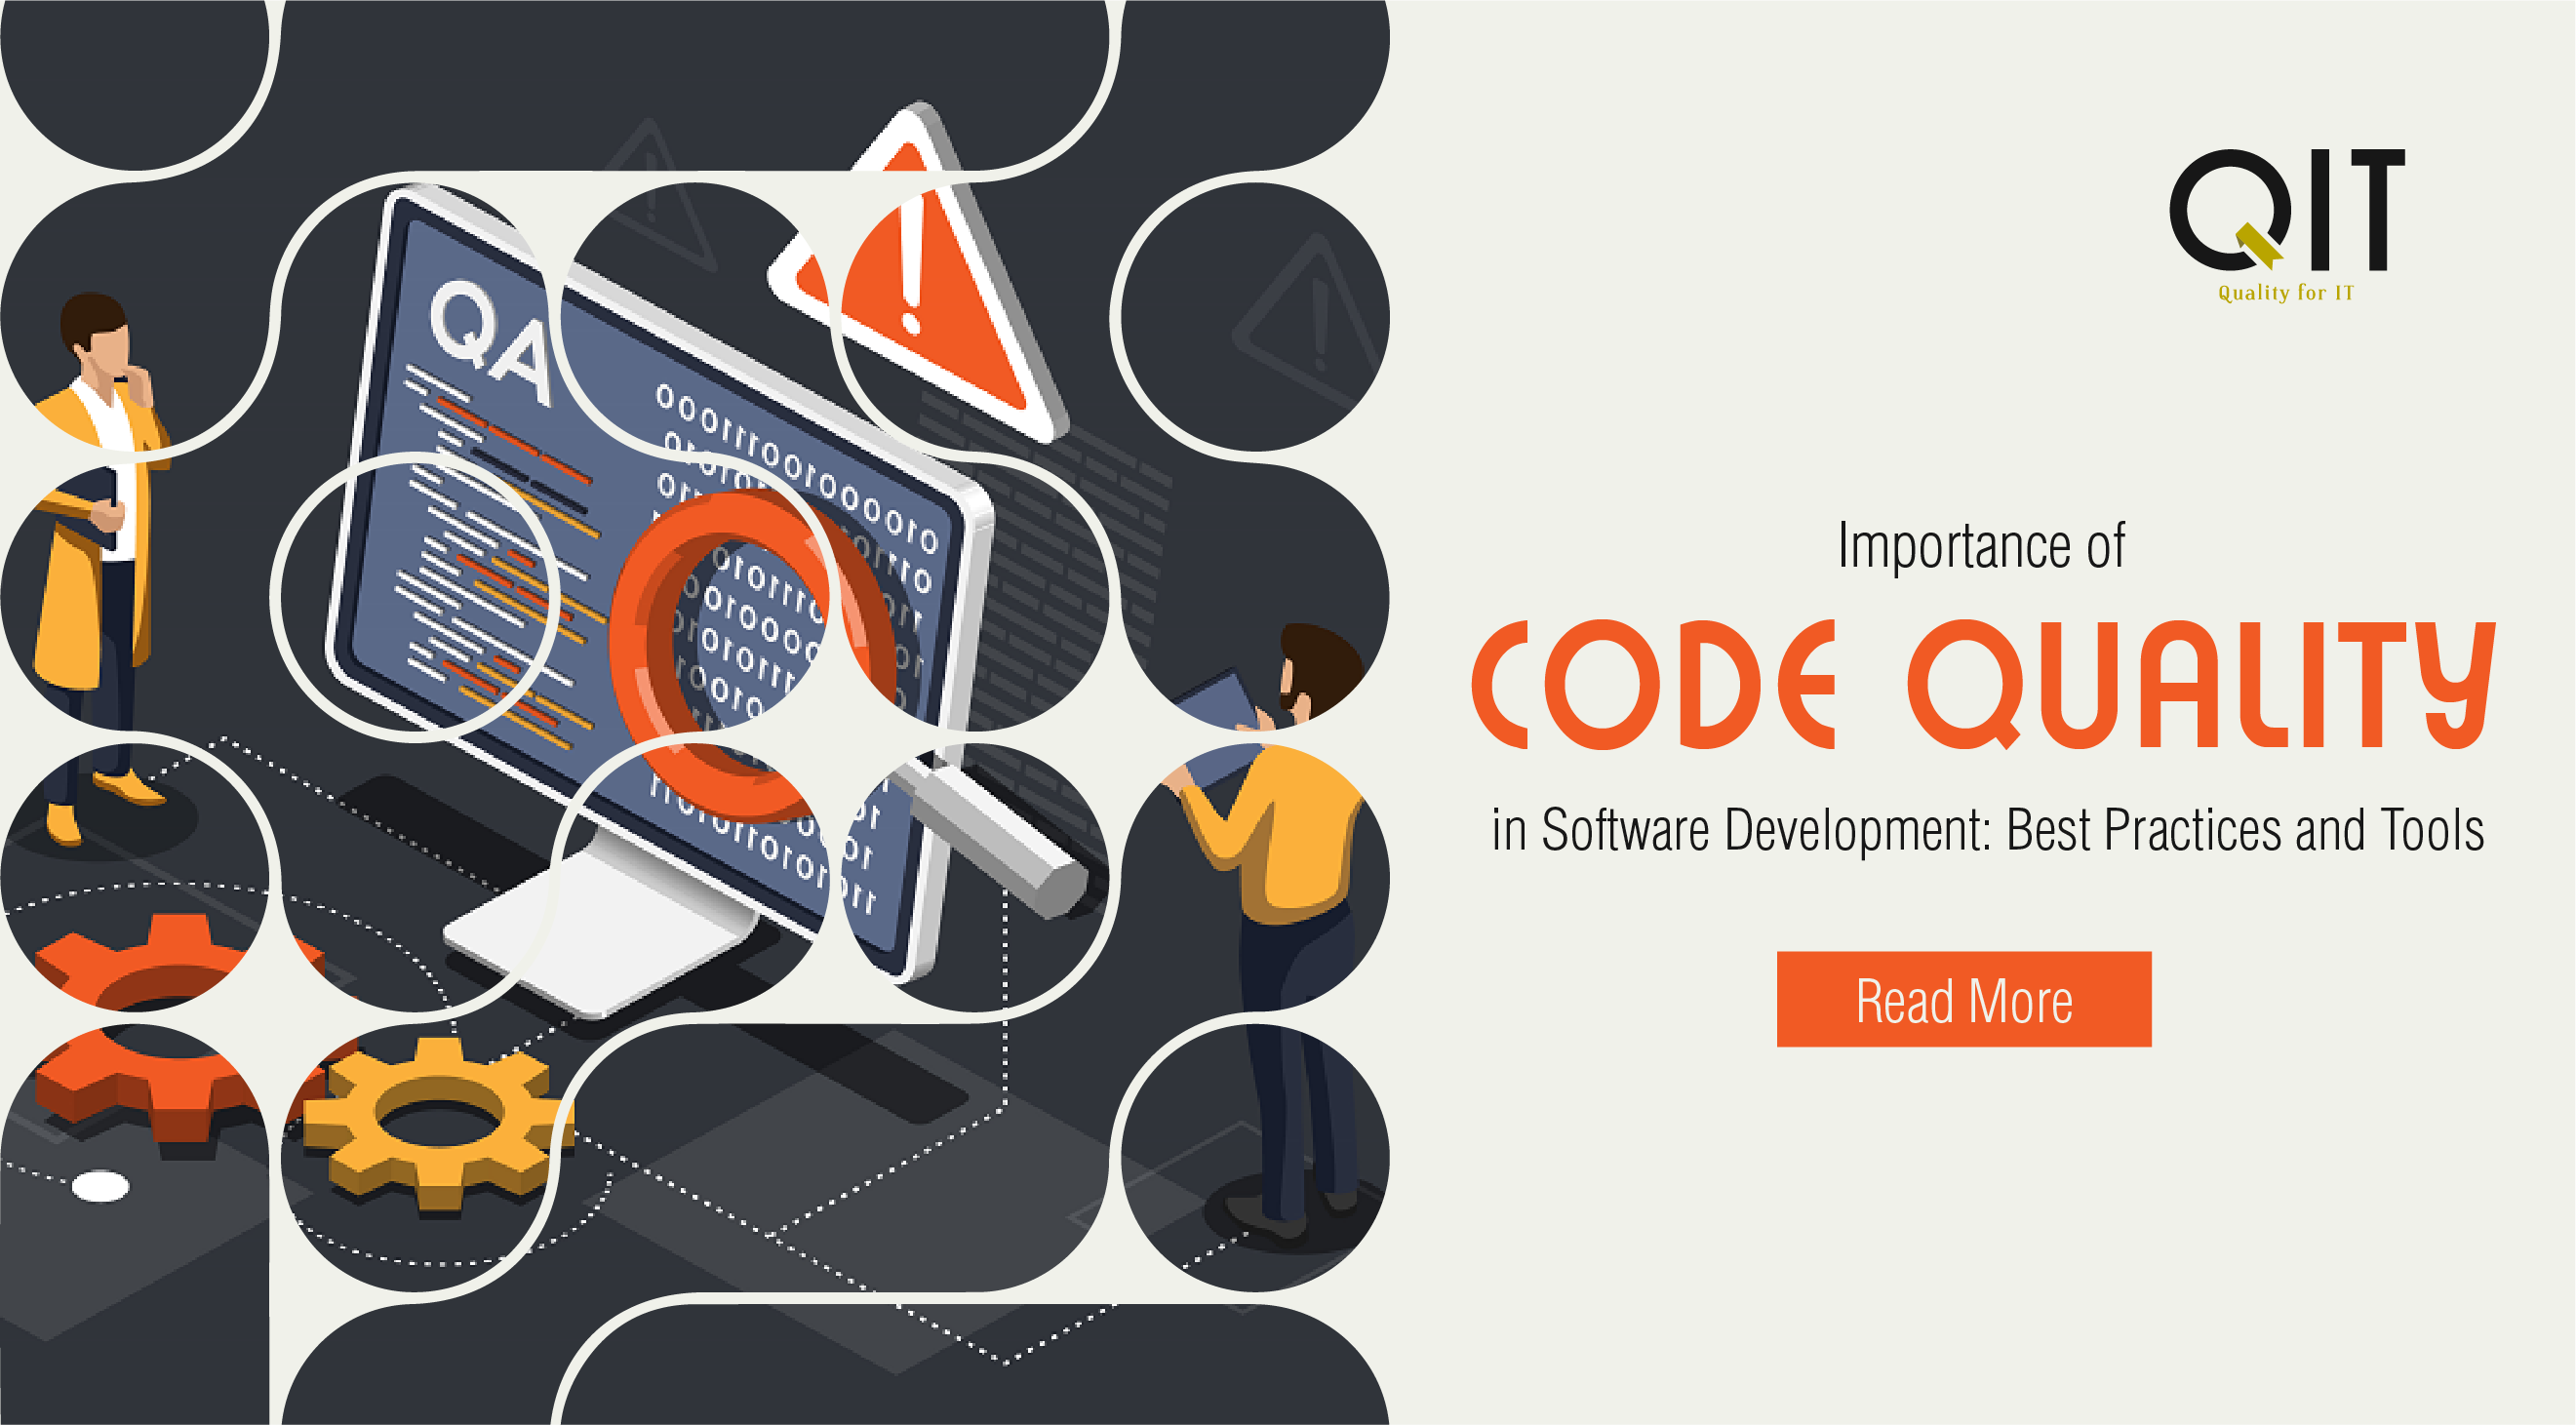 learn software development